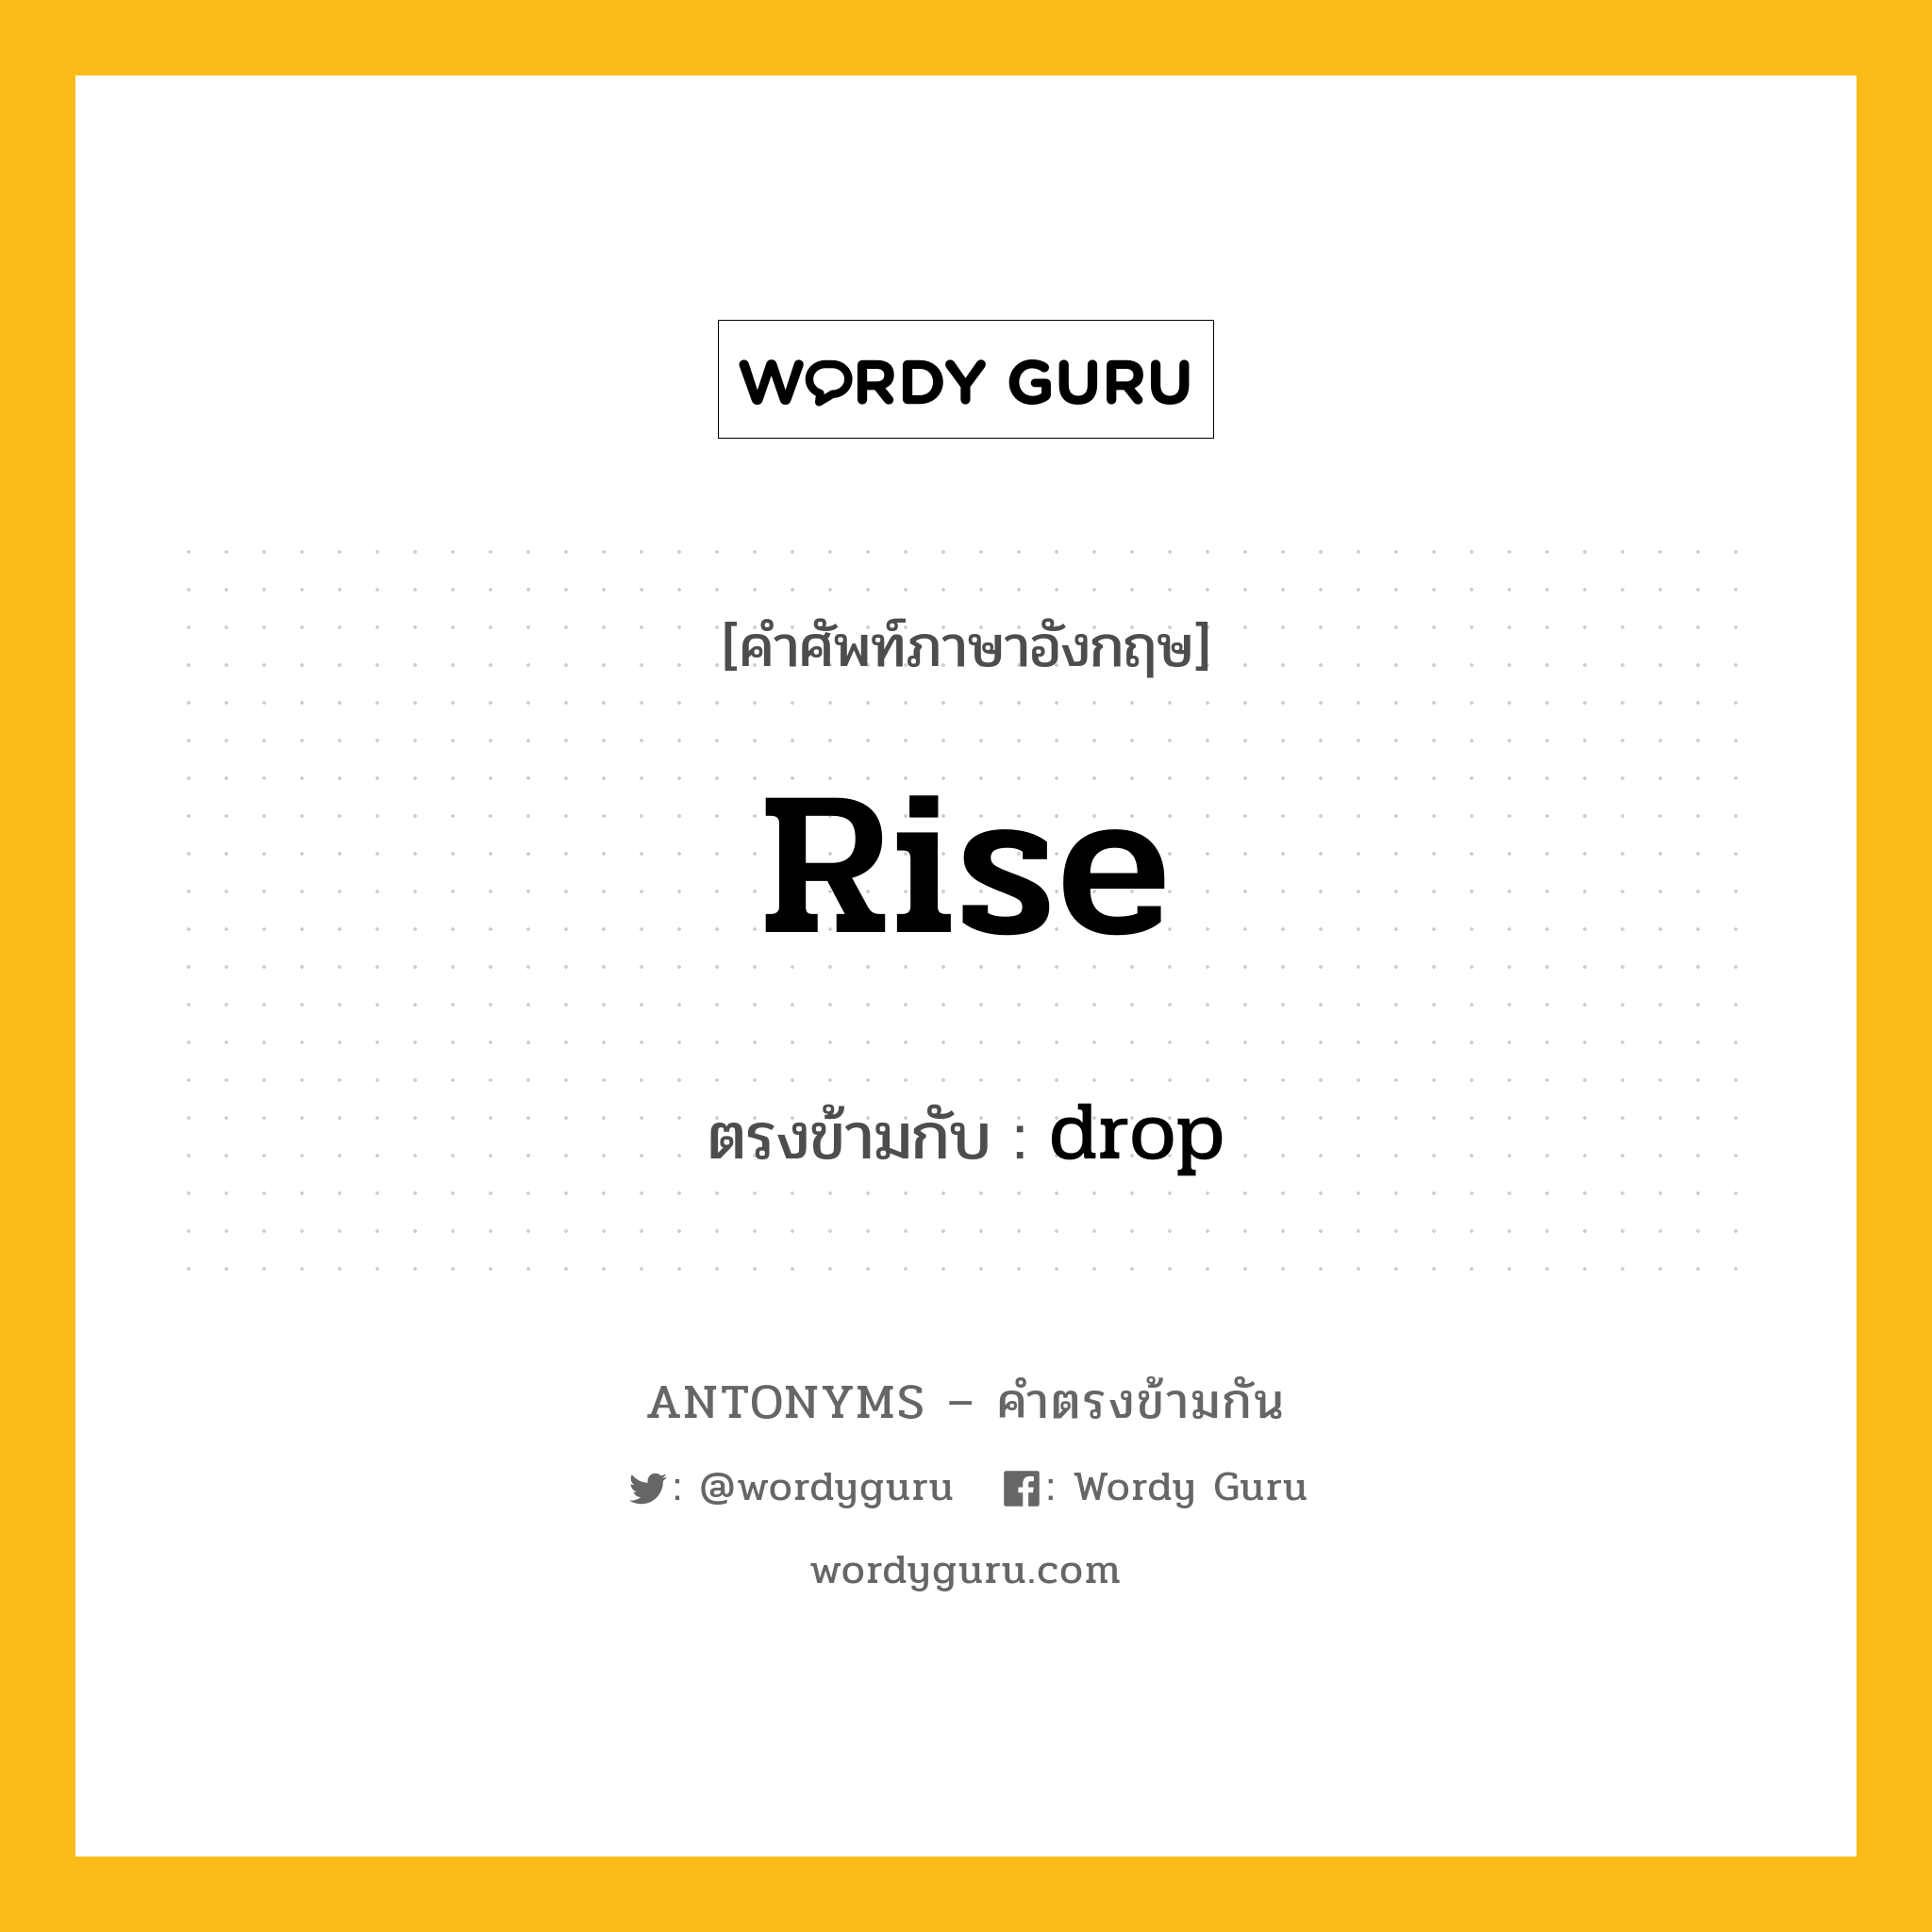 rise เป็นคำตรงข้ามกับคำไหนบ้าง?, คำศัพท์ภาษาอังกฤษ rise ตรงข้ามกับ drop หมวด drop